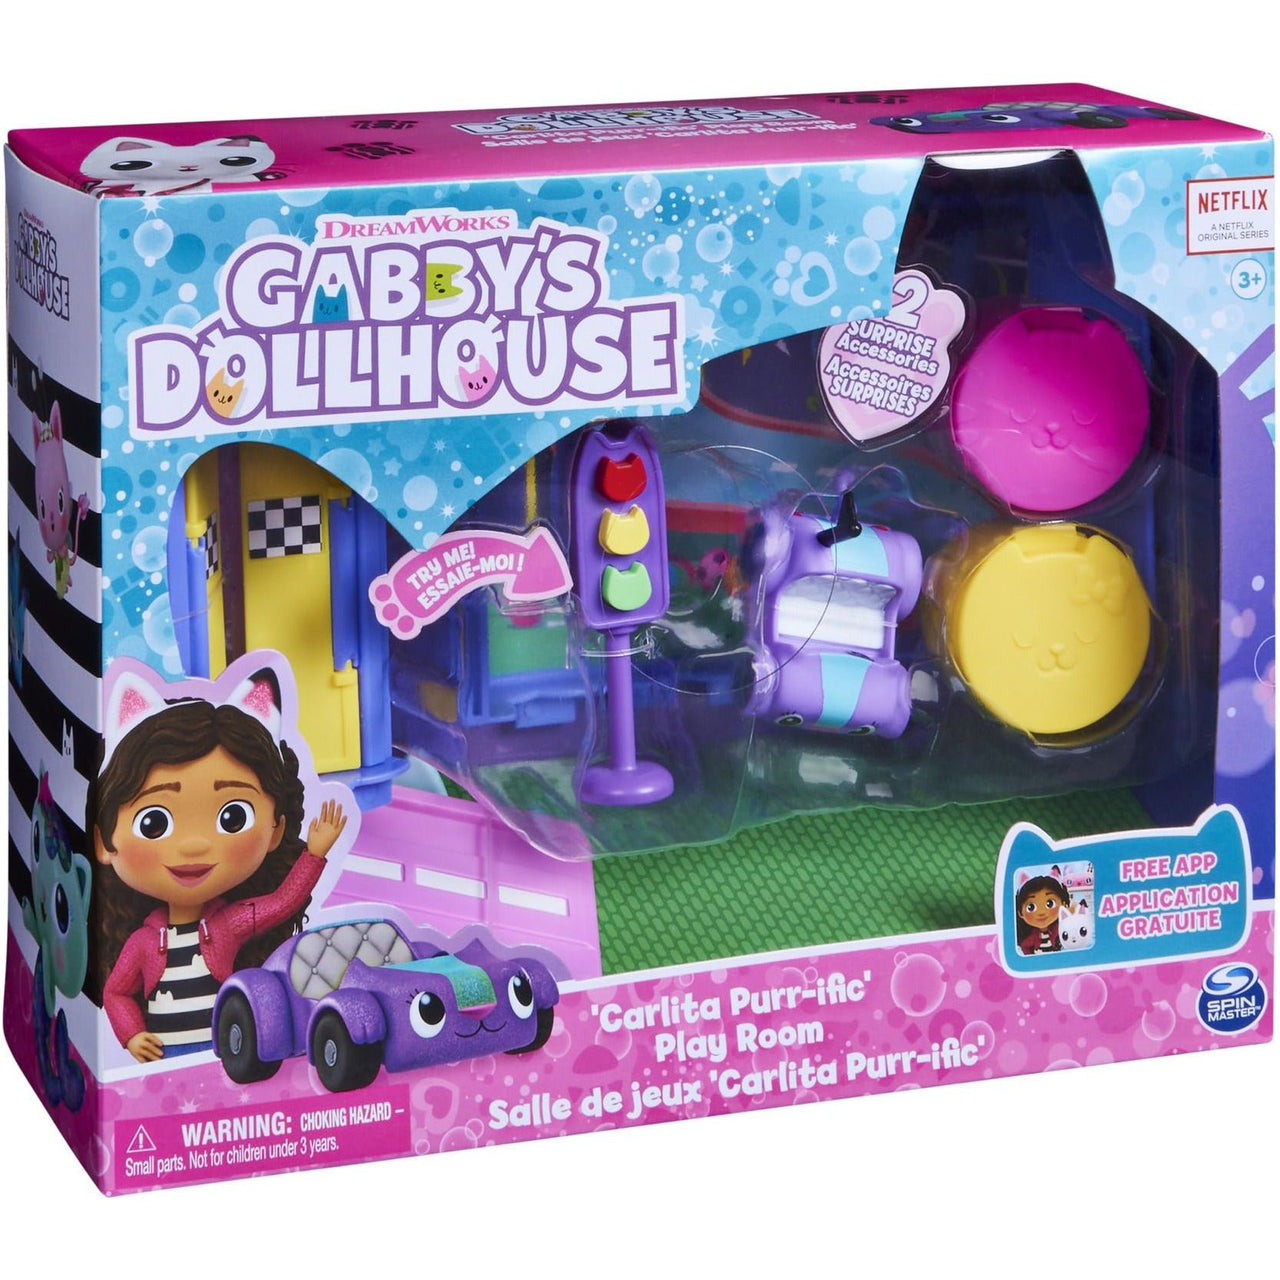 Gabby's Dollhouse Carlita Purr-ific Play Room Gabby's Dollhouse